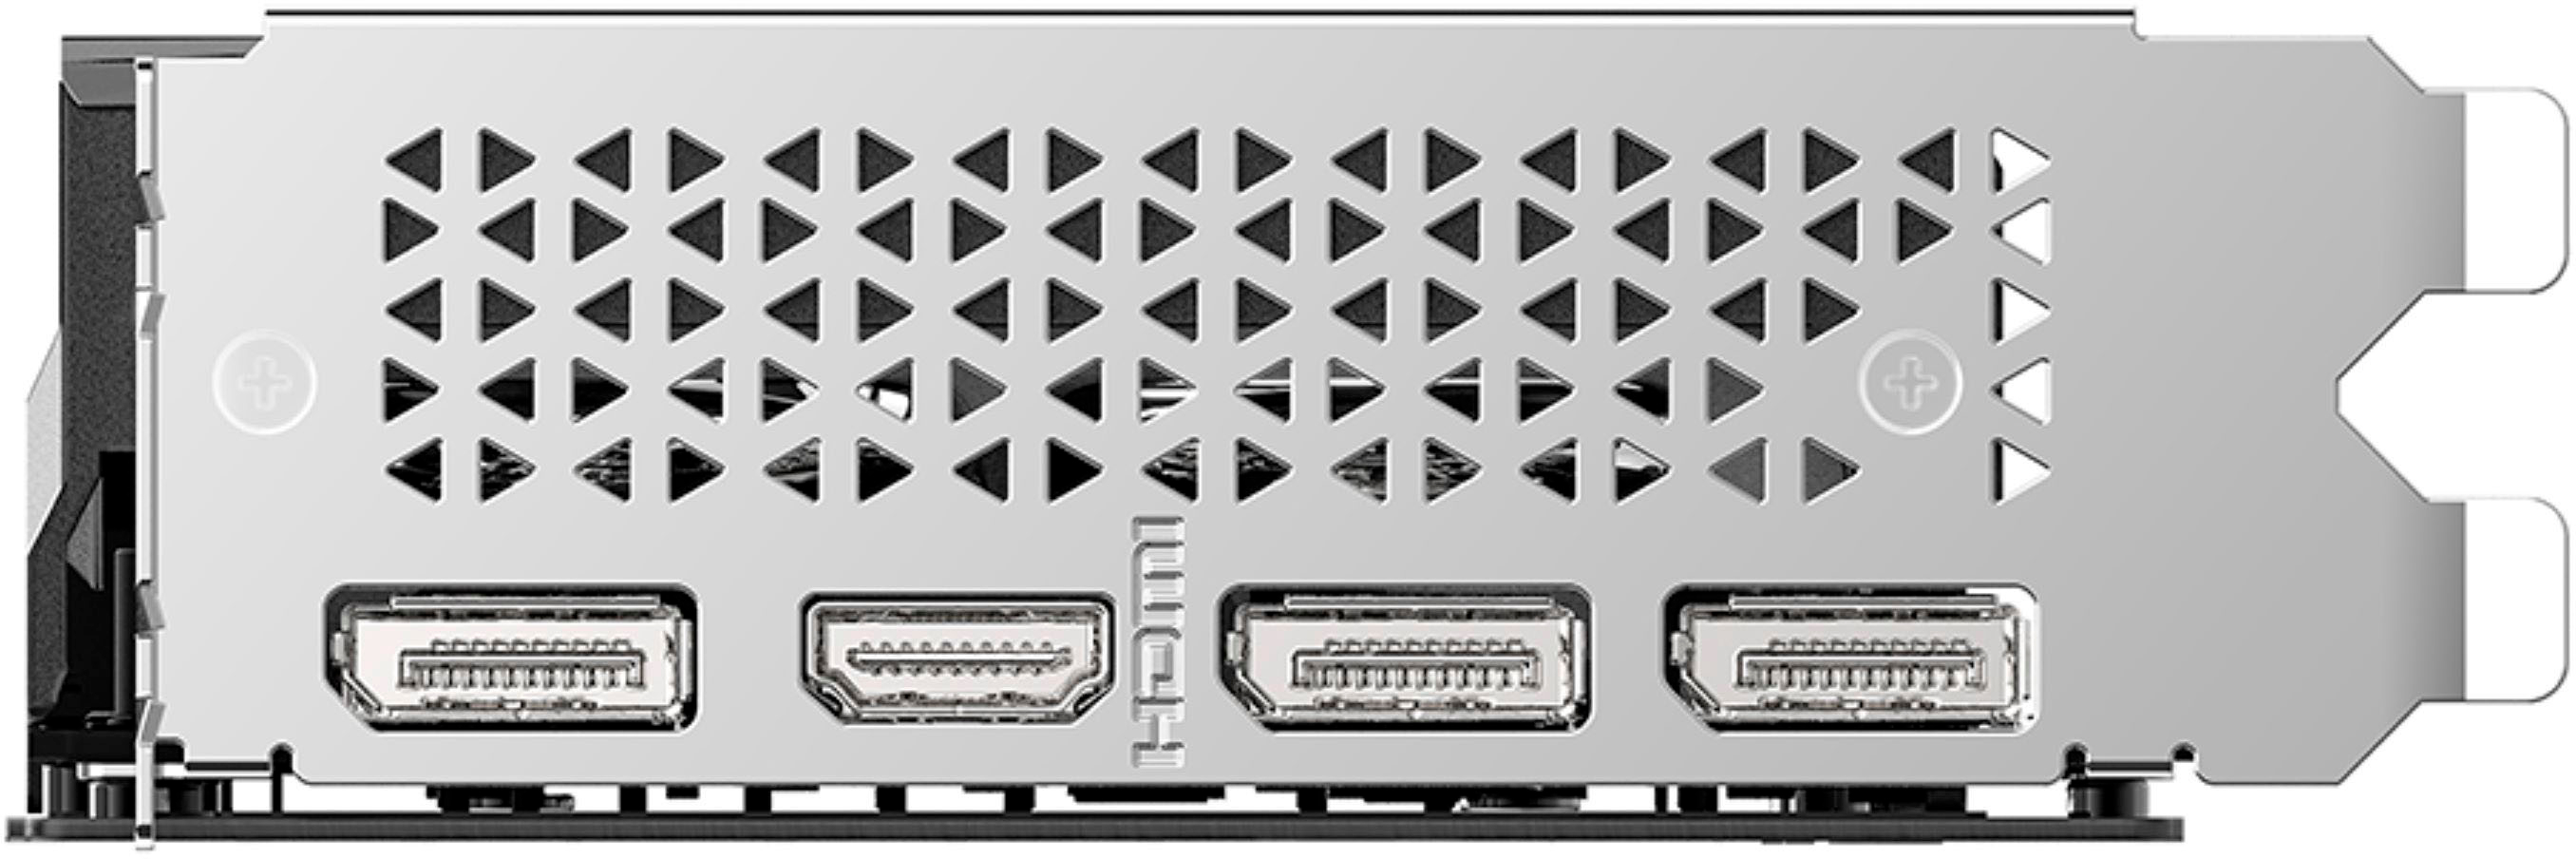 PNY NVIDIA GeForce RTX 4060 8GB GDDR6 PCIe Gen 4 x16 Triple Fan Graphics  Card with Triple Fan Black VCG40608TFXXPB1 - Best Buy